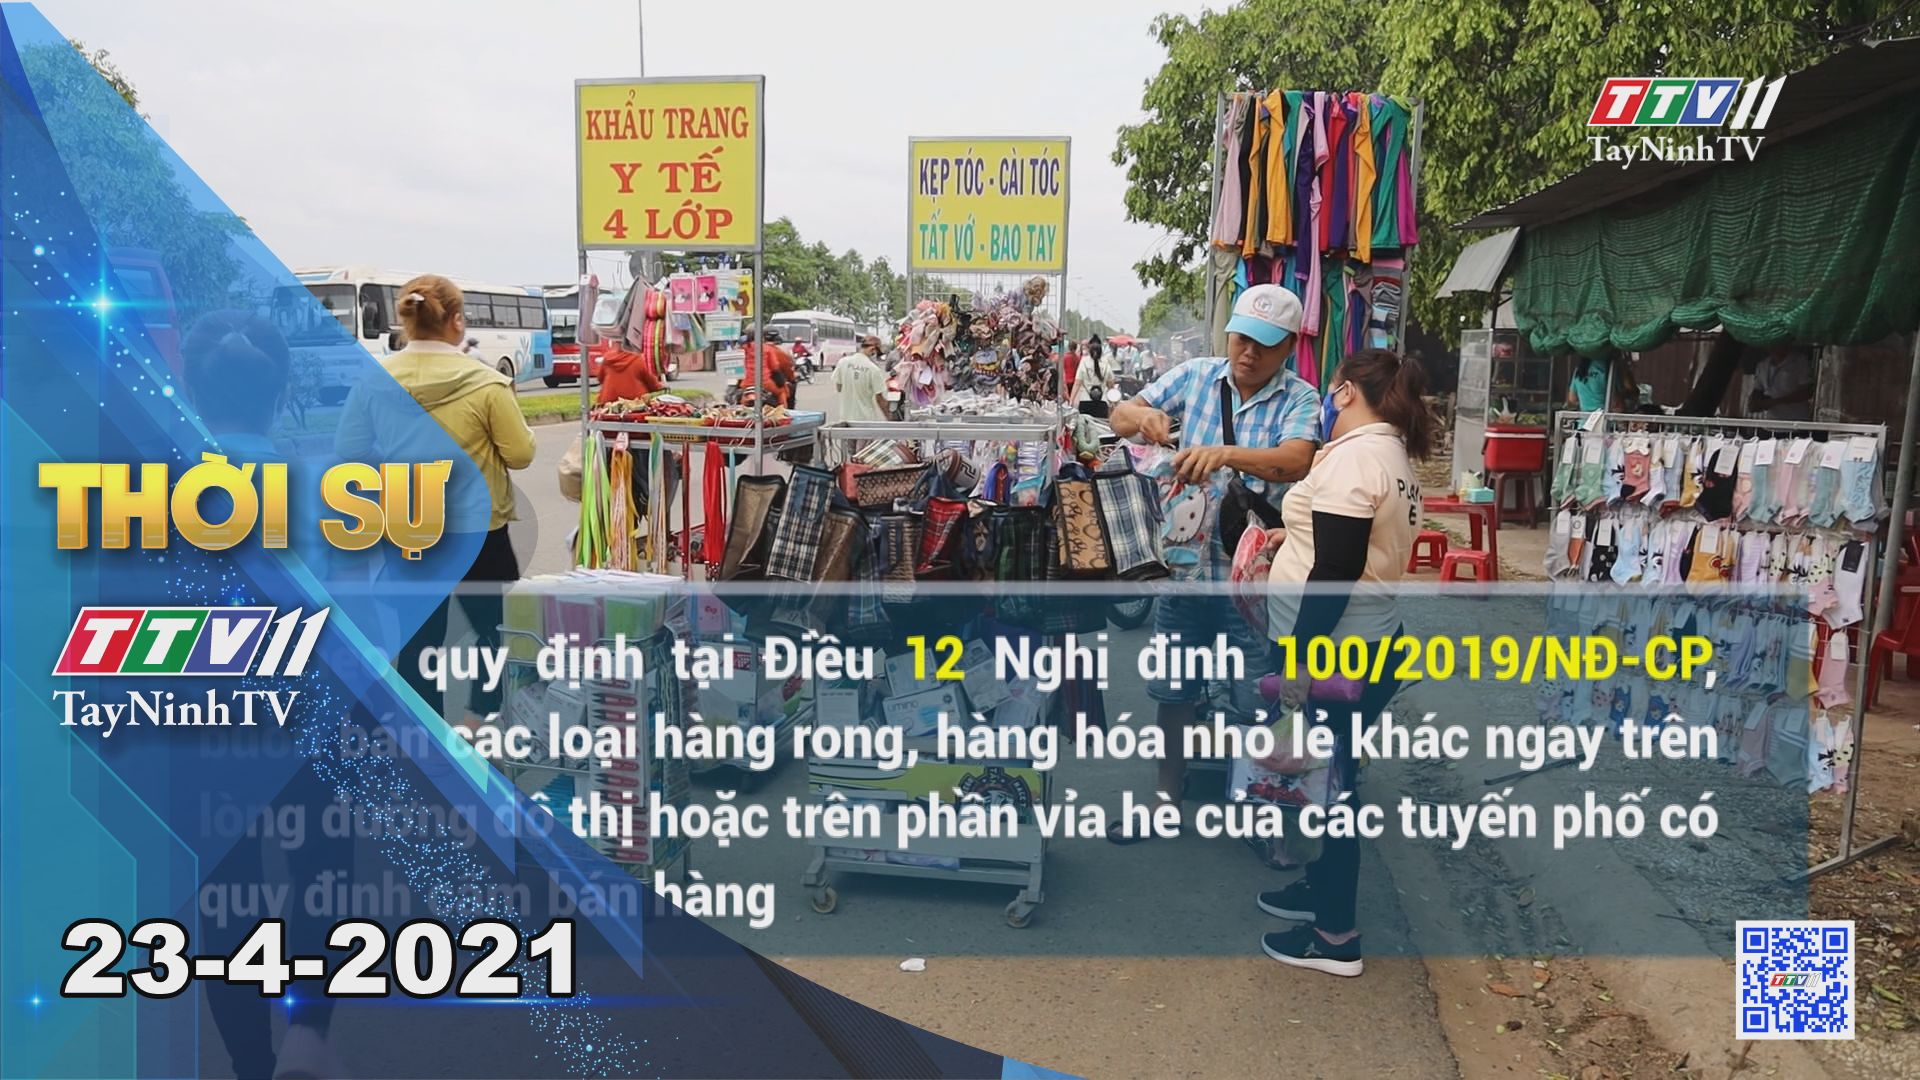 Thời sự Tây Ninh 23-4-2021 | Tin tức hôm nay | TayNinhTV